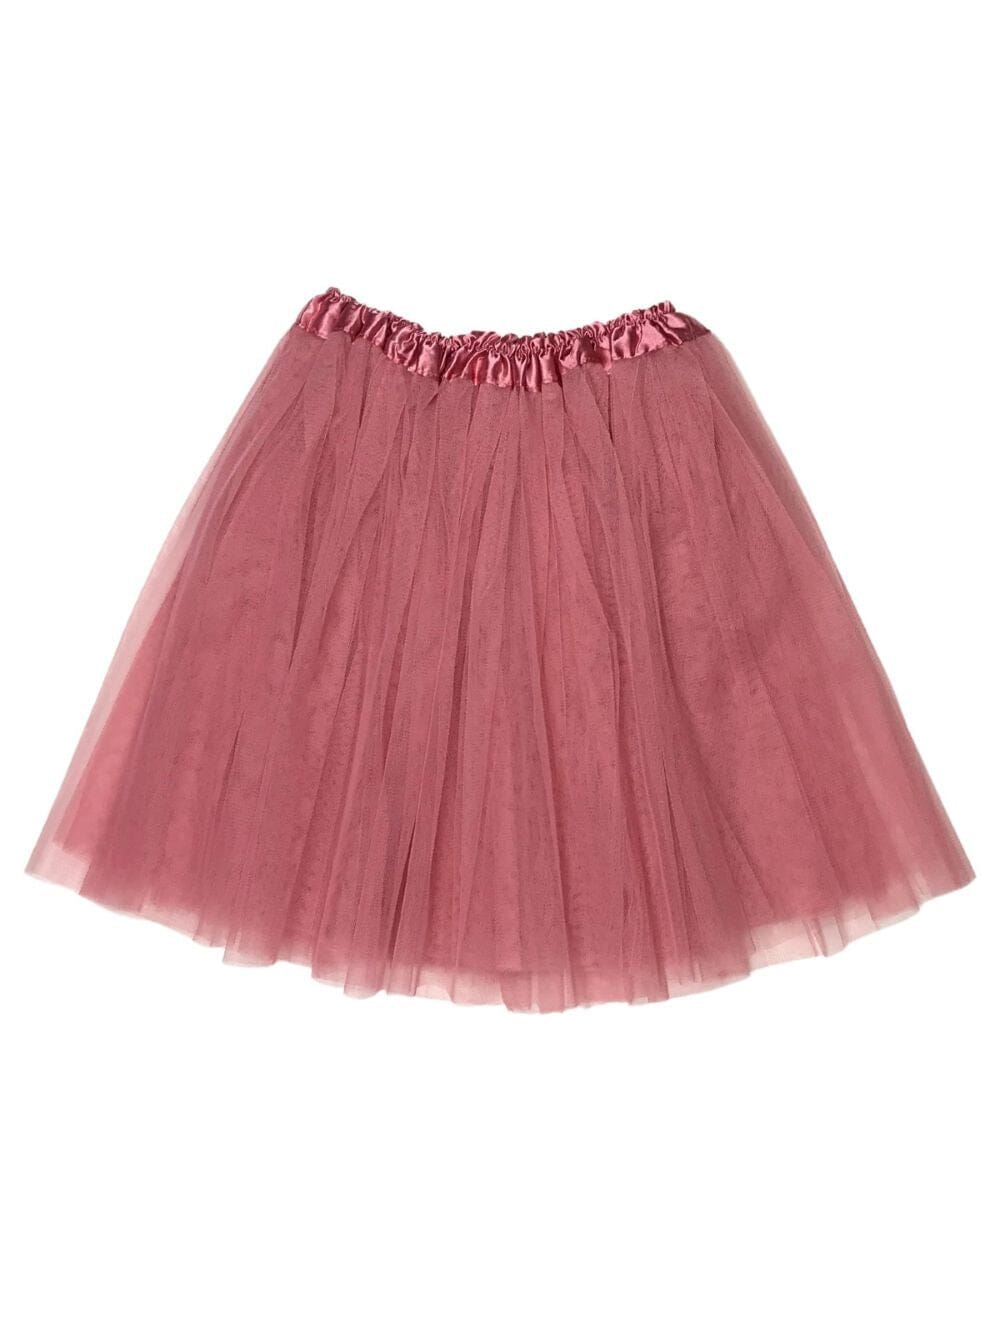 Dusty Rose Tutu Skirt for Adult - Women's Size 3-Layer Tulle Skirt Ballet Costume Dance Tutus - Sydney So Sweet